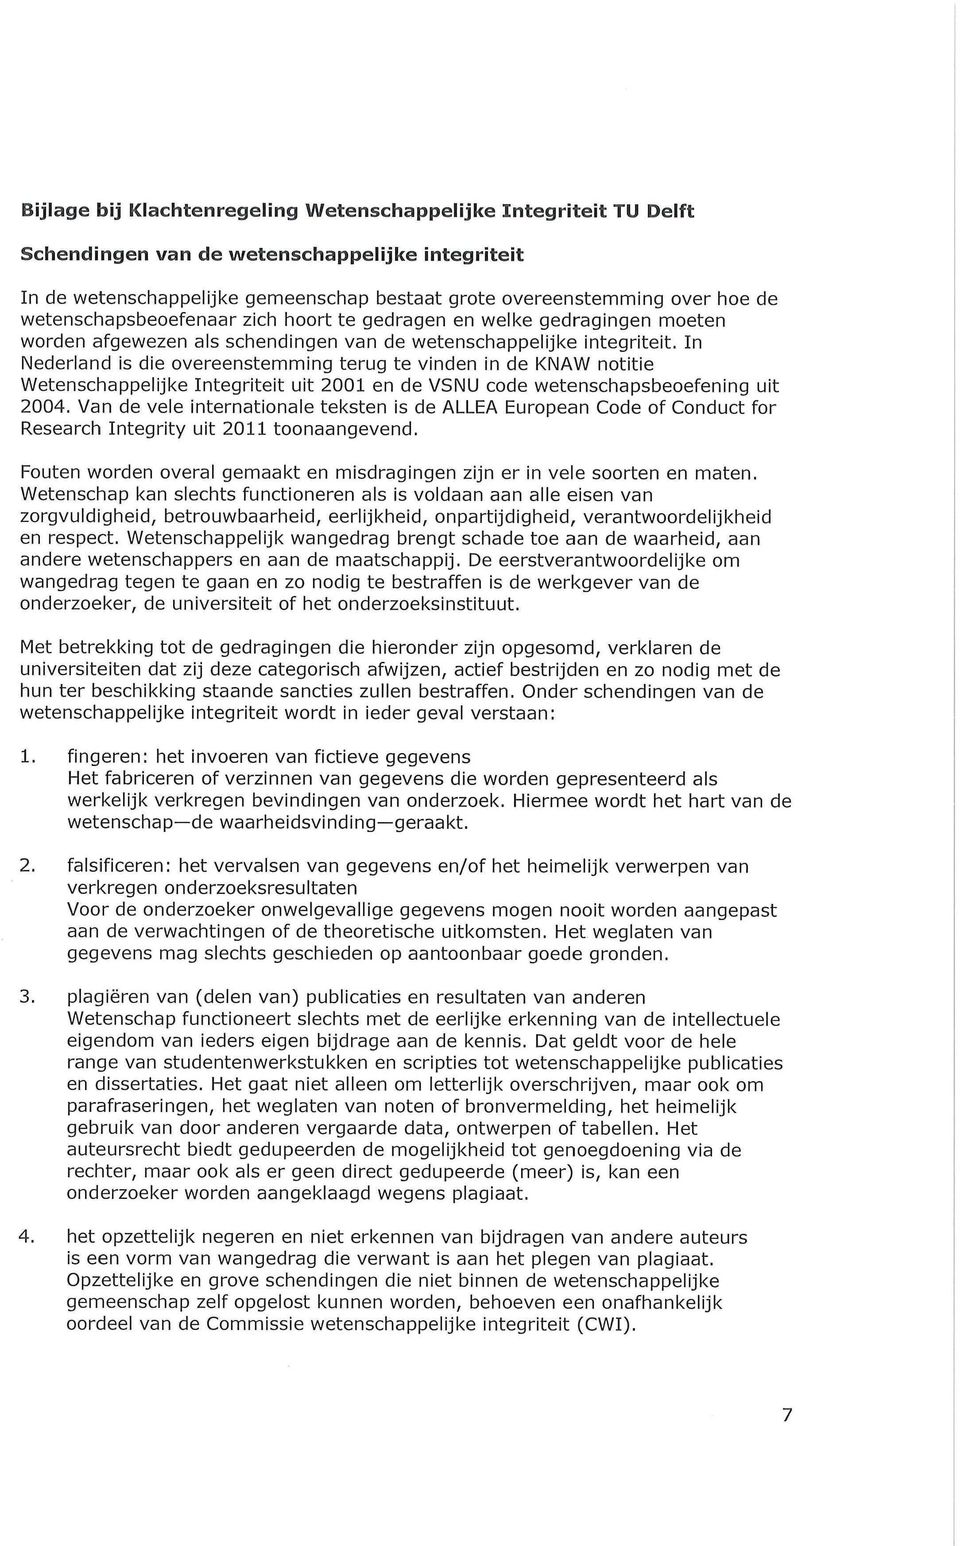 In Nederland is die overeenstemming terug te vinden in de KNAW notitie Wetenschappelijke Integriteit uit 2001 en de VSNU code wetenschapsbeoefening uit 2004.